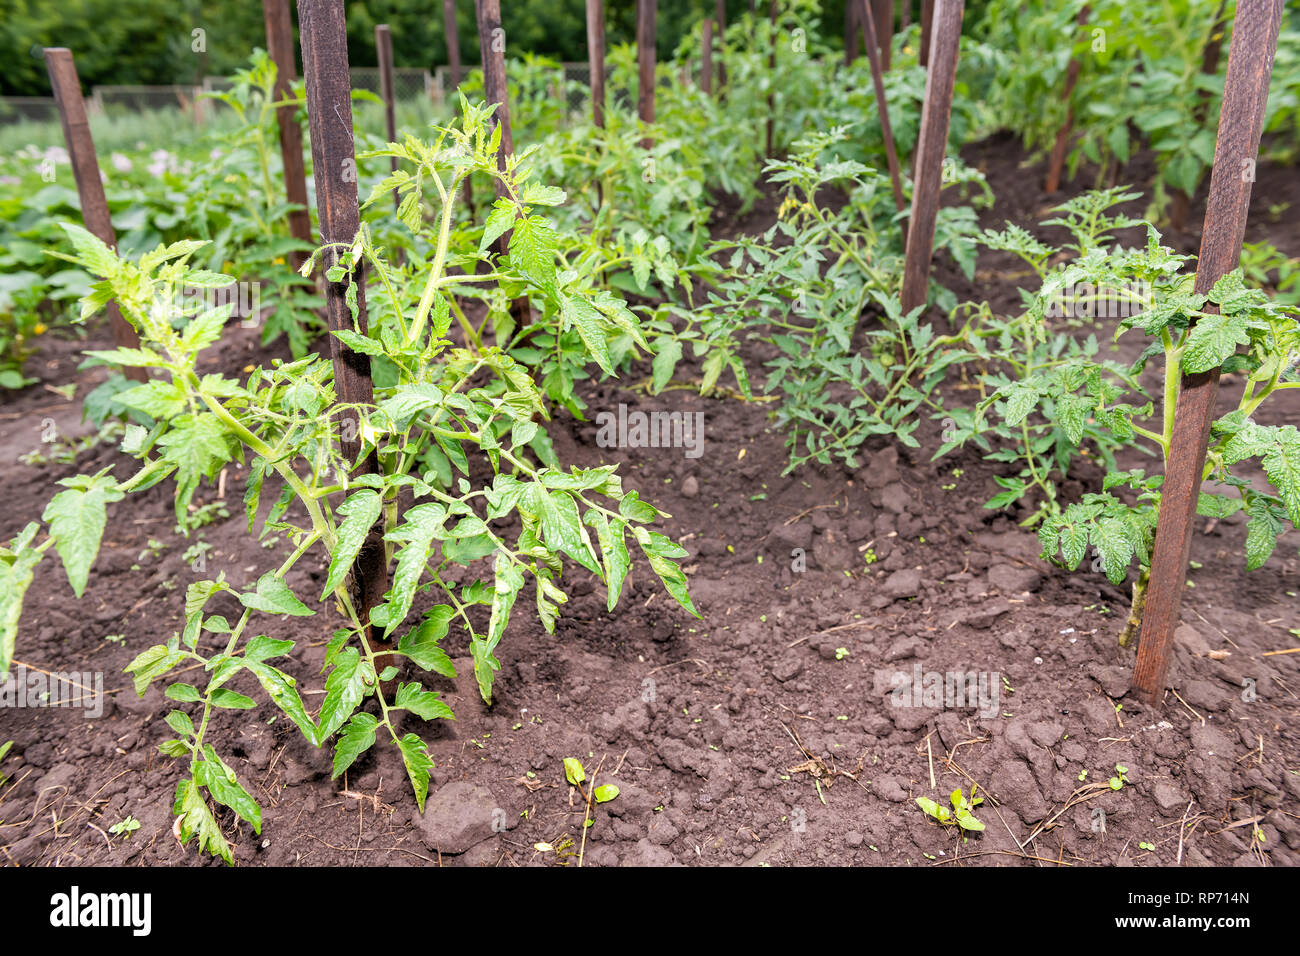 Nahaufnahme der Zeilen von vielen grünen Tomaten Pflanzen hängen wachsen  auf der Weinstock im Garten durch Boden, Holz- stick Pol Stockfotografie -  Alamy